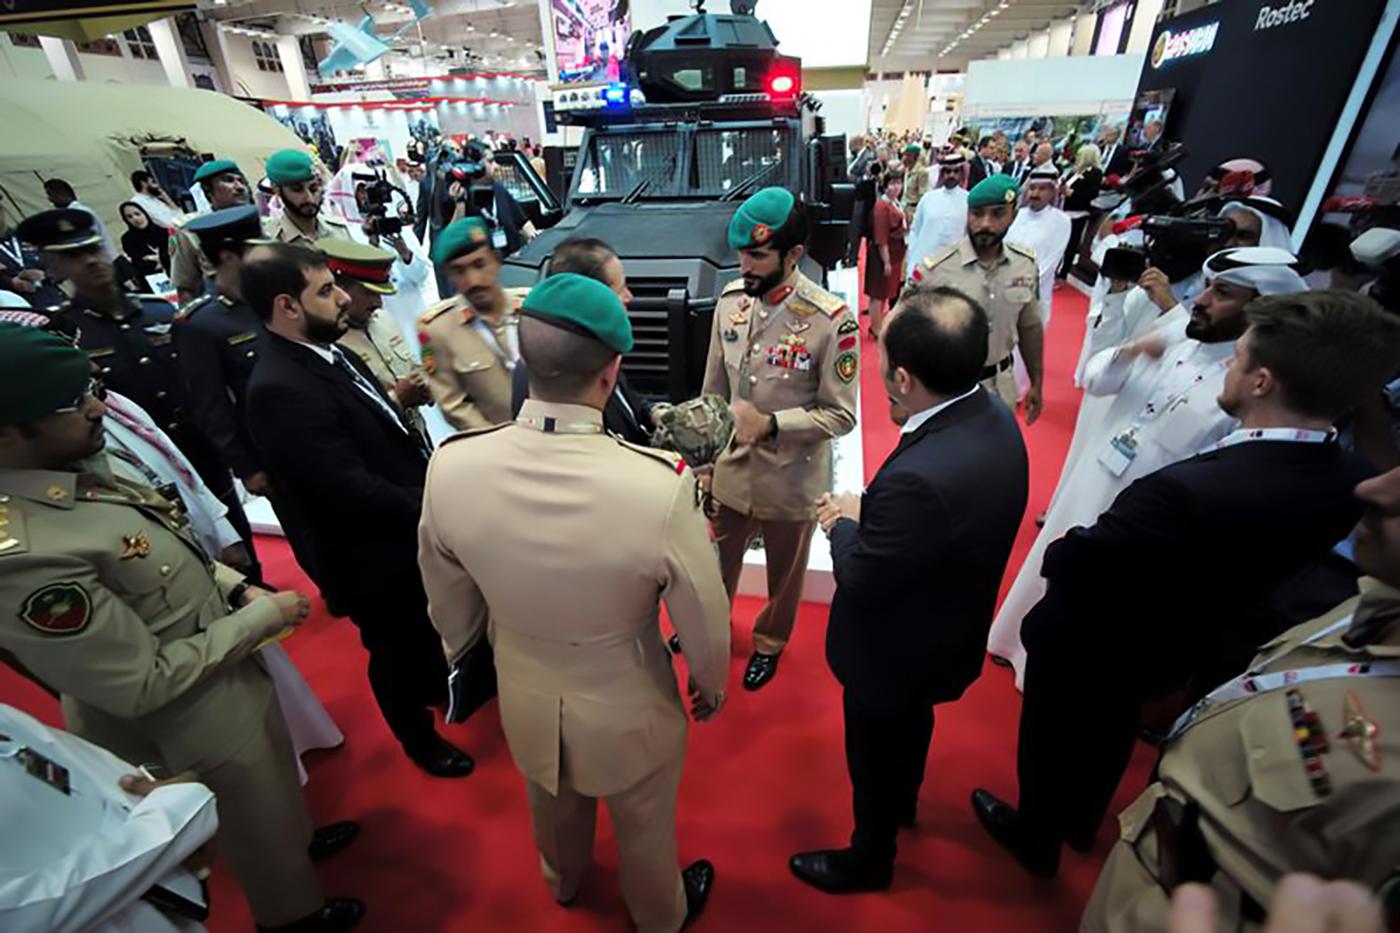 Le Brigadier Cheikh Nasser bin Hamad al Khalifa, Chef du protocole et représentant du roi de Bahreïn, photographié avec d'autres officiers et dignitaires lors du Salon internatioal de l'armement BIDEC tenu à Manama en octobre 2017.